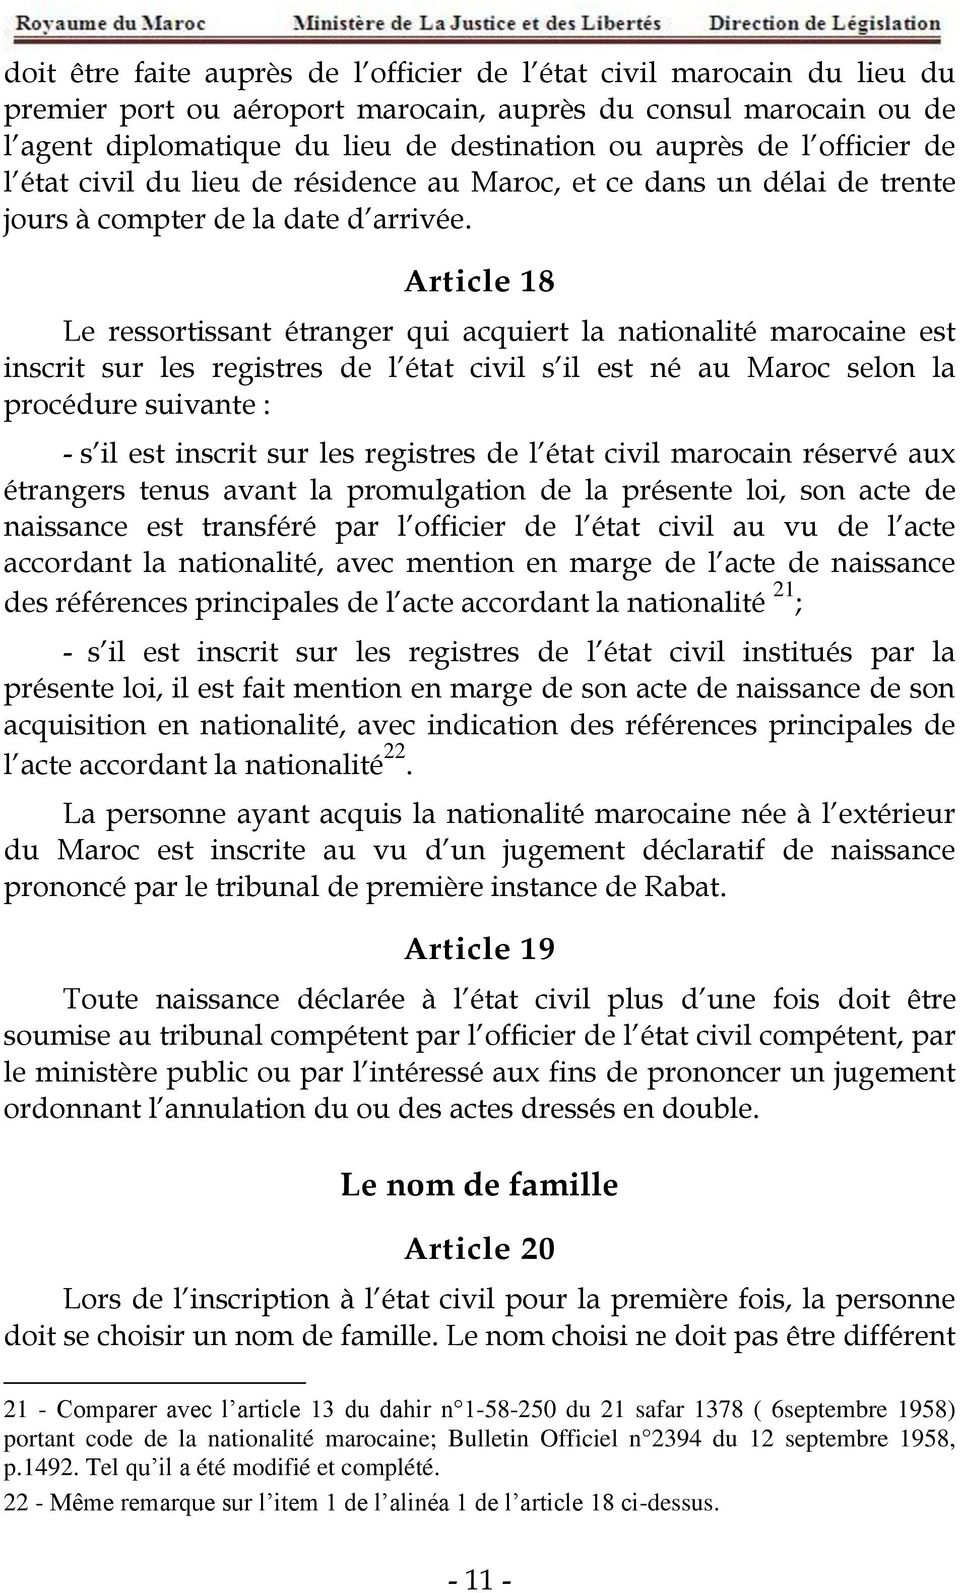 Article 18 Le ressortissant étranger qui acquiert la nationalité marocaine est inscrit sur les registres de l état civil s il est né au Maroc selon la procédure suivante : - s il est inscrit sur les